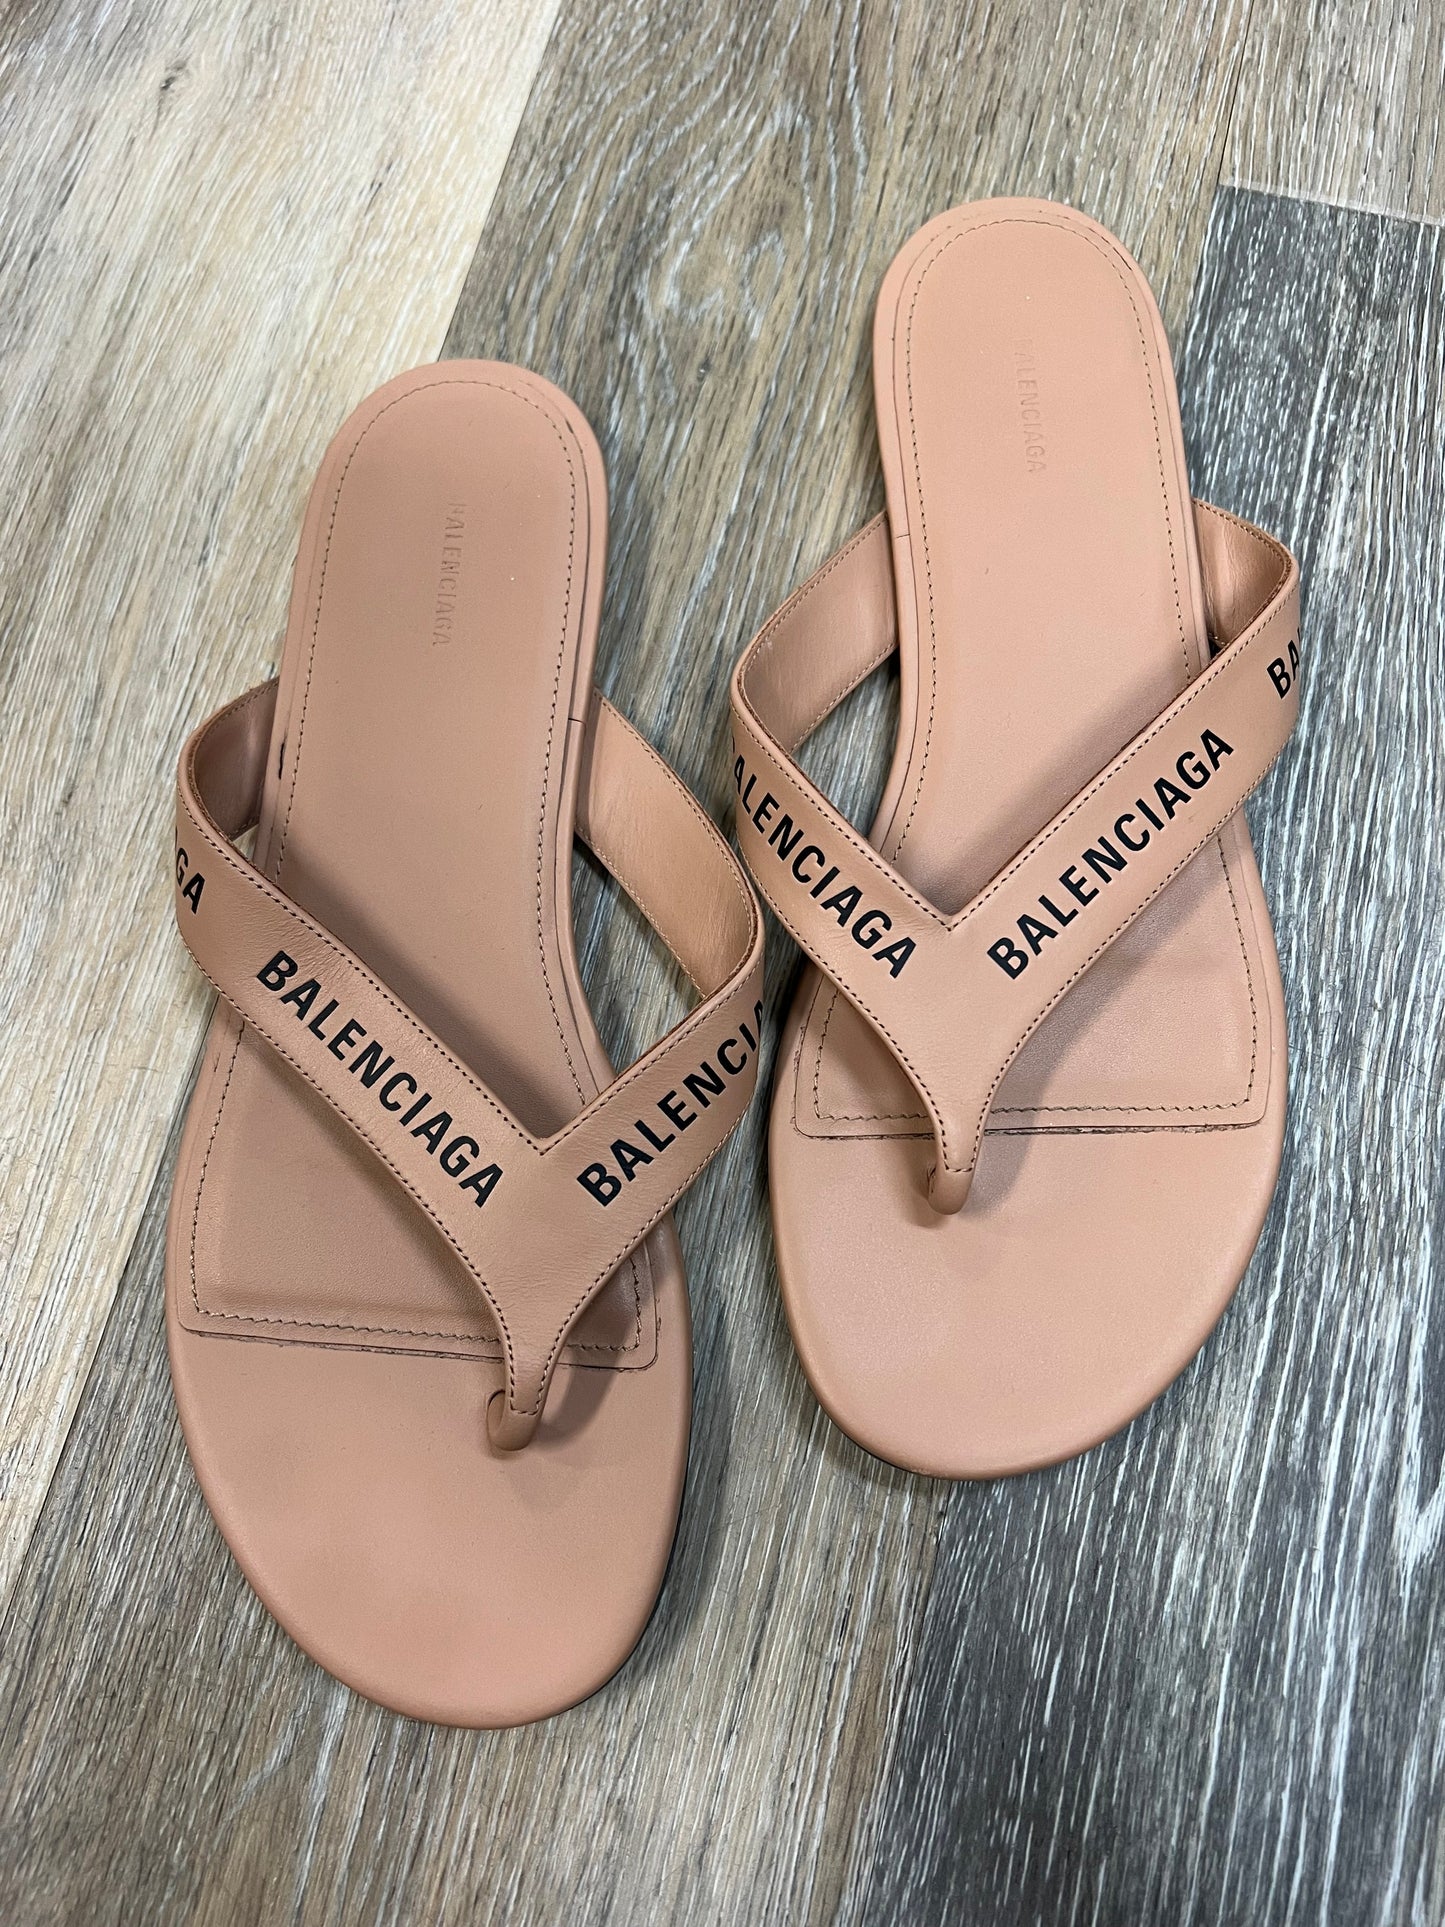 Tan Sandals Designer Balenciaga, Size 7.5/37.5